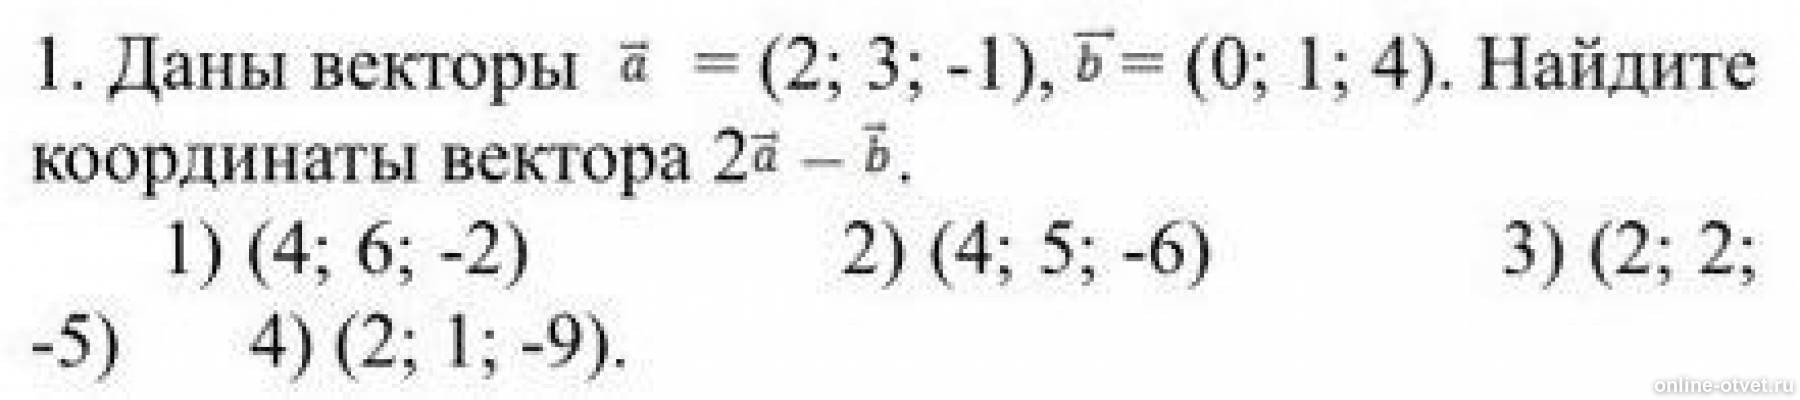 Даны вектора 4 6 и 2 3. Найдите координаты вектора 2а-3b. Даны векторы найти координаты вектора. Даны векторы {–3; 1; 4} и {2; –2; 1}. Найдите координаты вектора = + .. Даны векторы a 2 4 и b -3 2 Найдите координаты векторов.